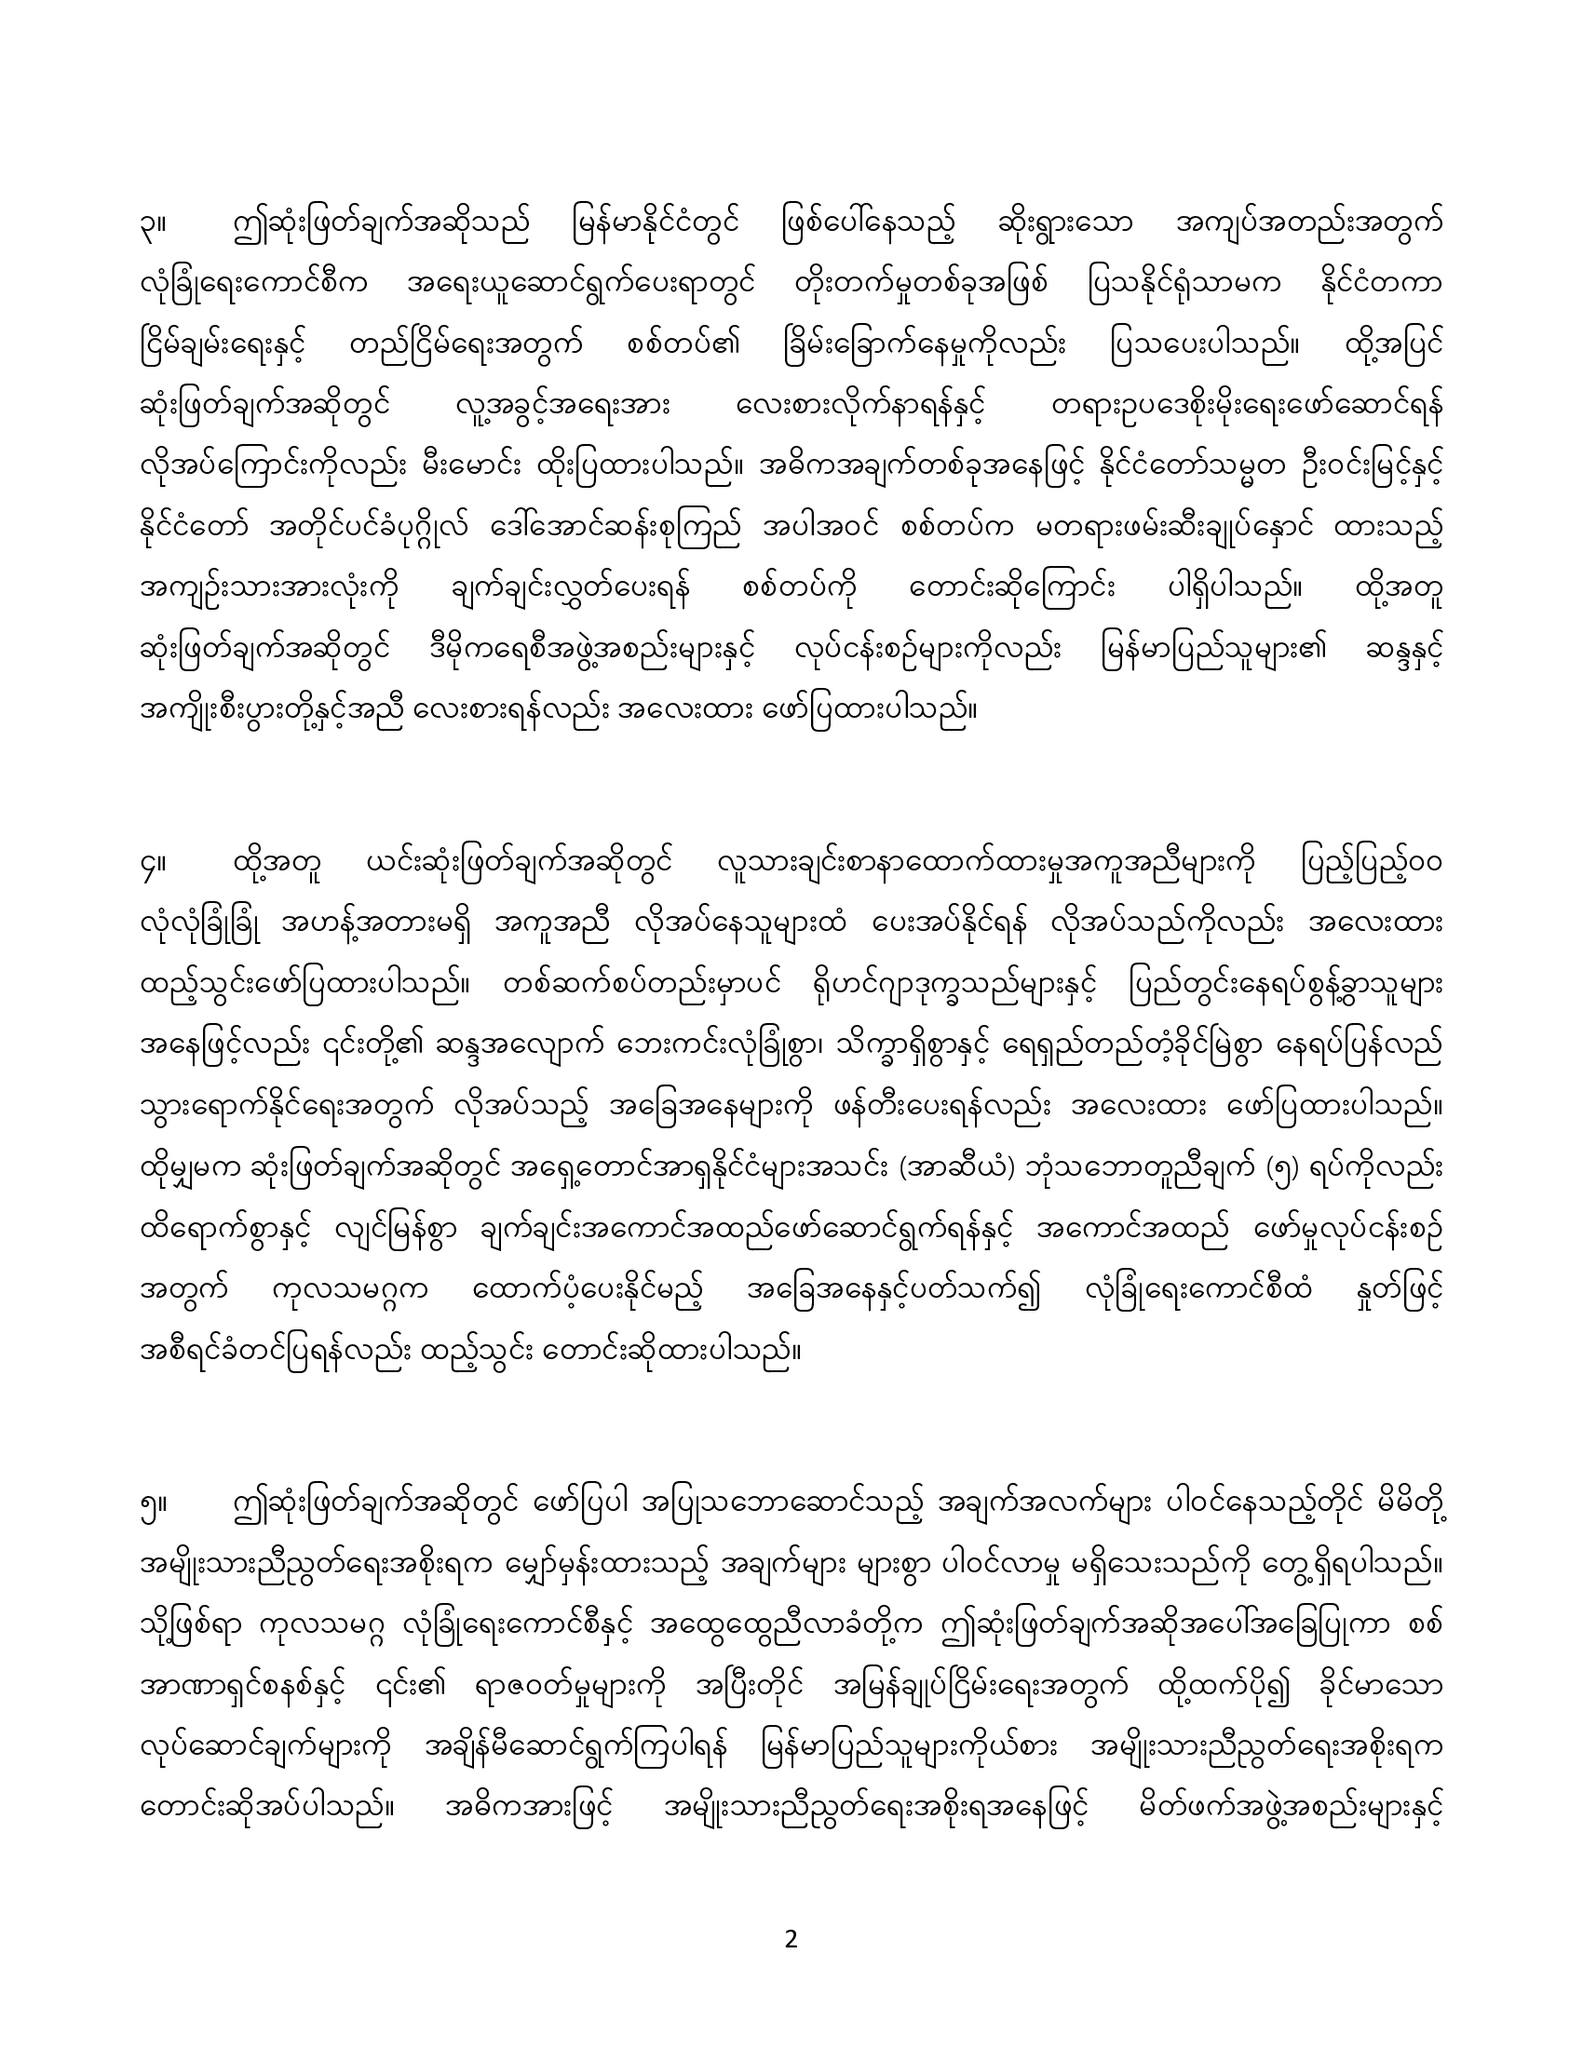 “မြန်မာနိုင်ငံတွင် ဖြစ်ပေါ်လျက်ရှိသော အခြေအနေများနှင့်ပတ်သက်သည့် ဆုံးဖြတ်ချက် အဆိုမူကြမ်းအား ကုလသမဂ္ဂ လုံခြုံရေးကောင်စီမှ အတည်ပြုခဲ့ခြင်းနှင့်စပ်လျဉ်း၍  ထုတ်ပြန်ချက်”